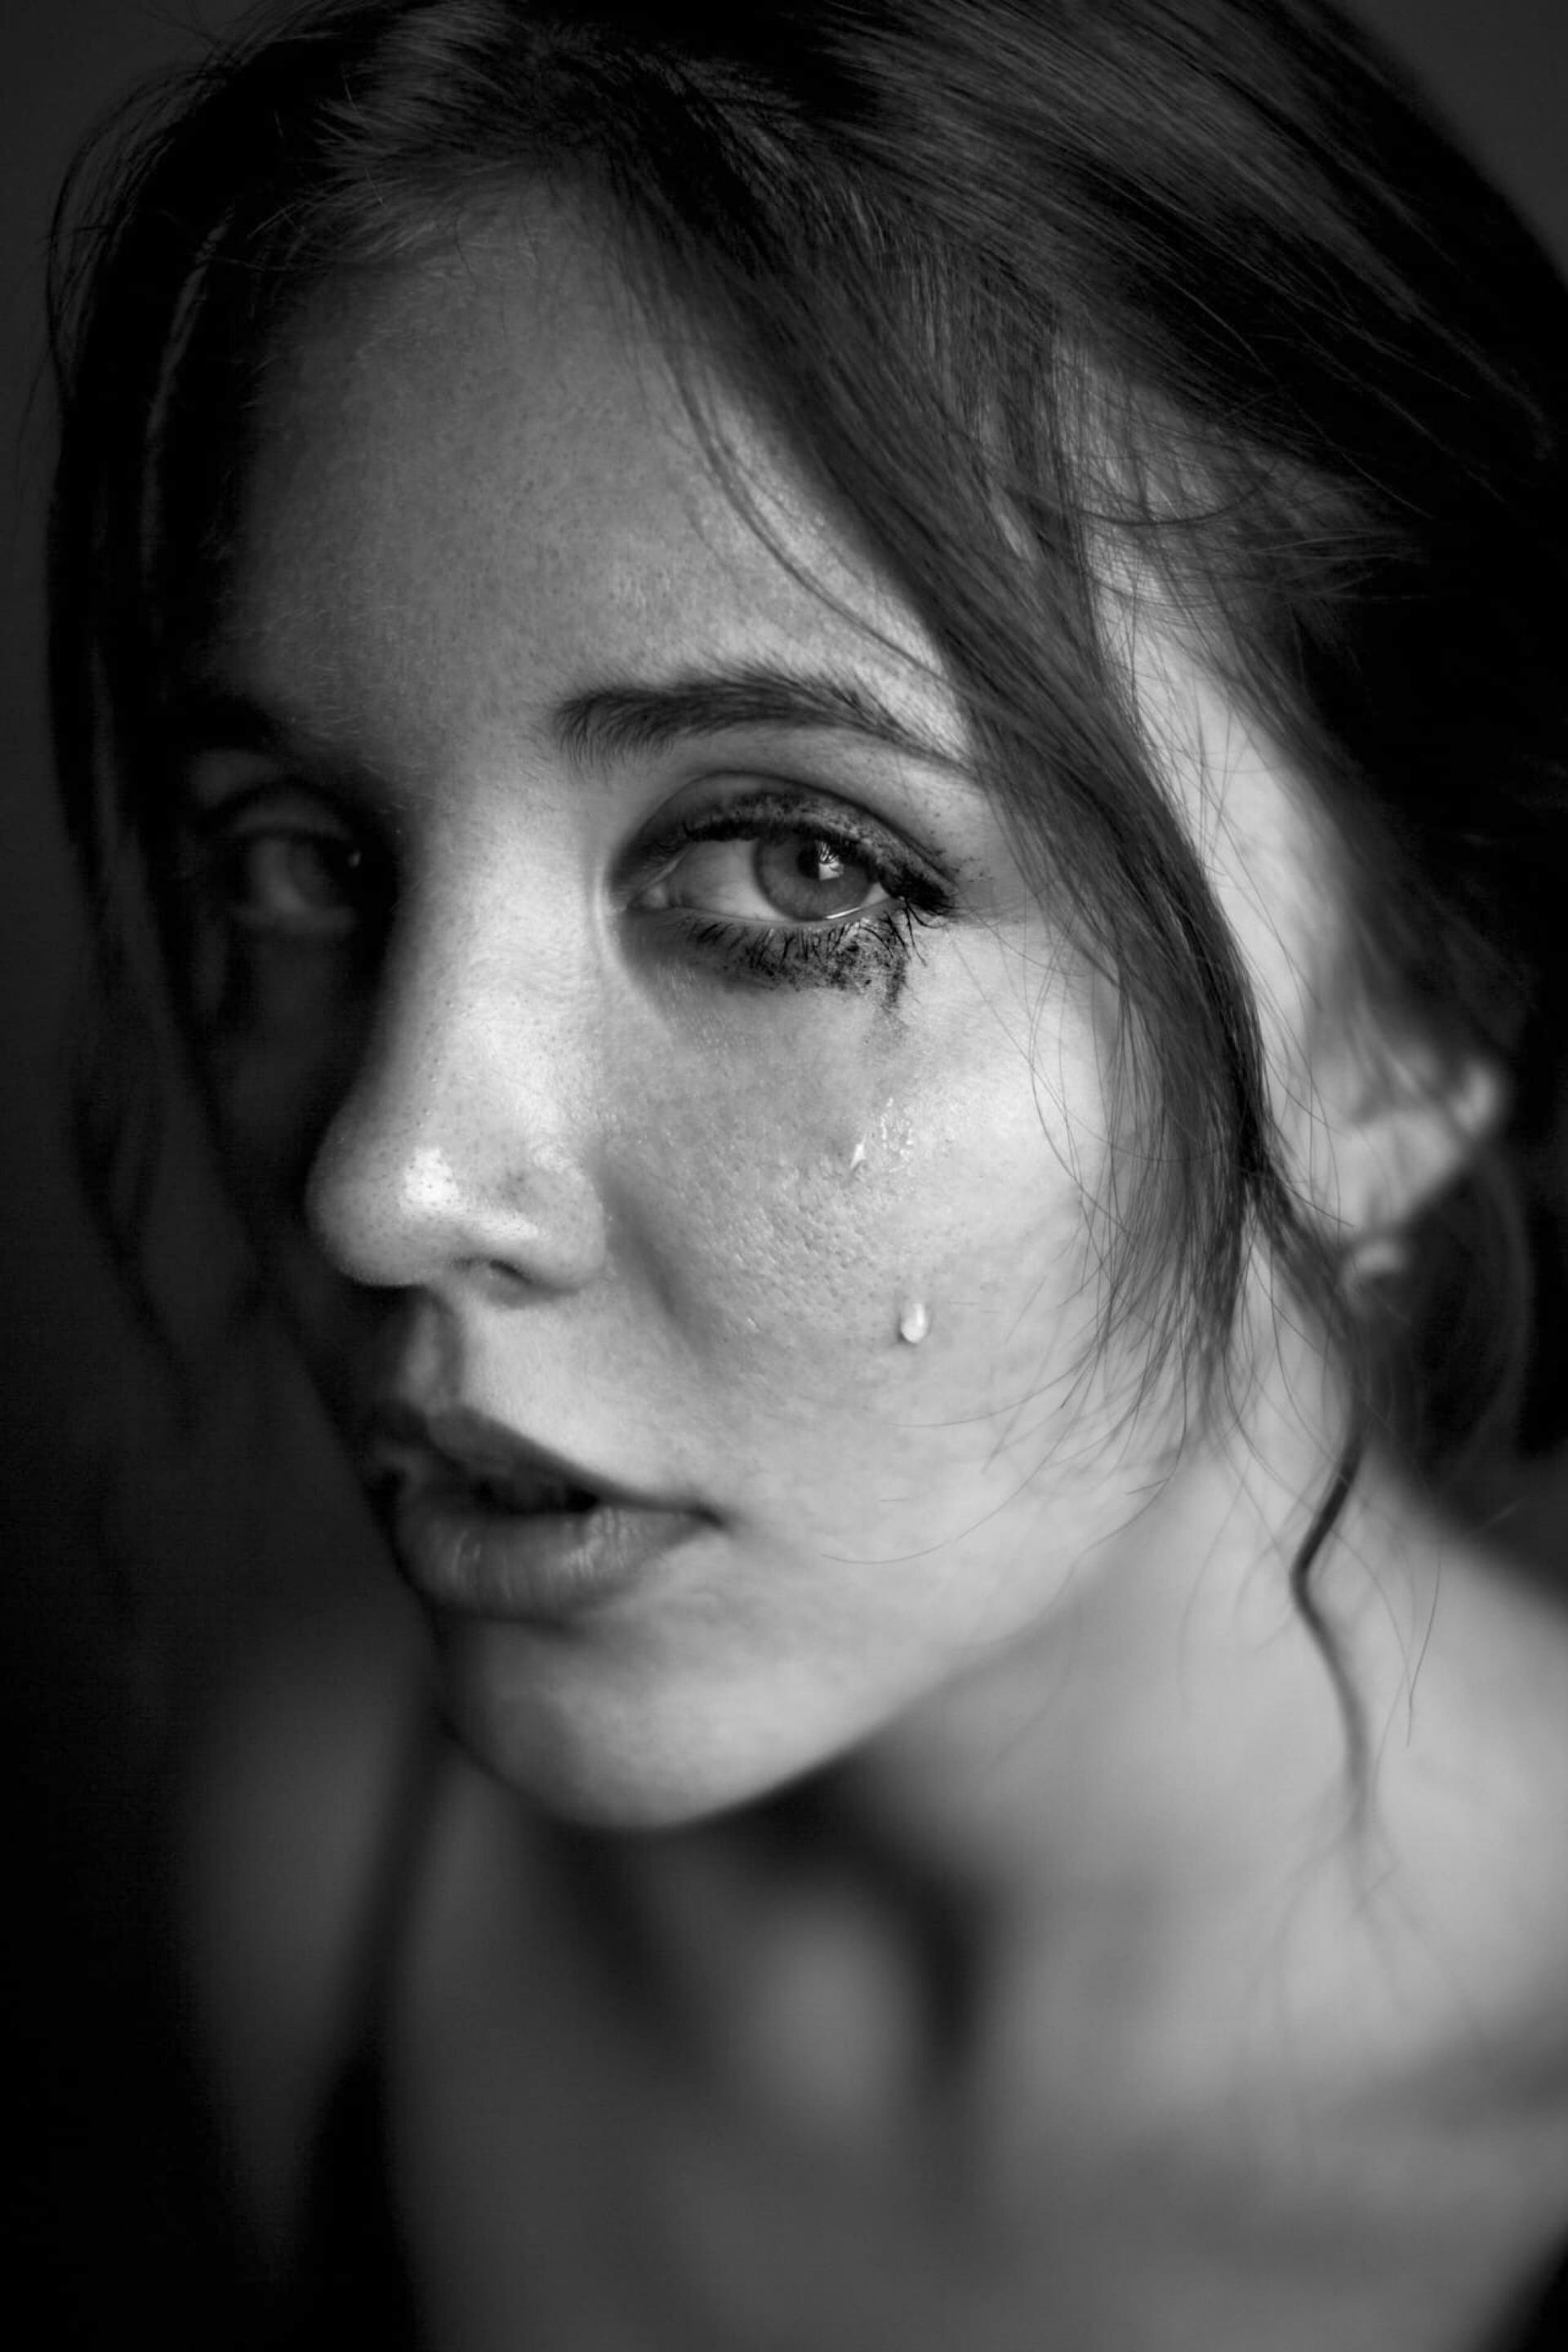 Eine aufgebrachte, weinende Frau | Quelle: Pexels